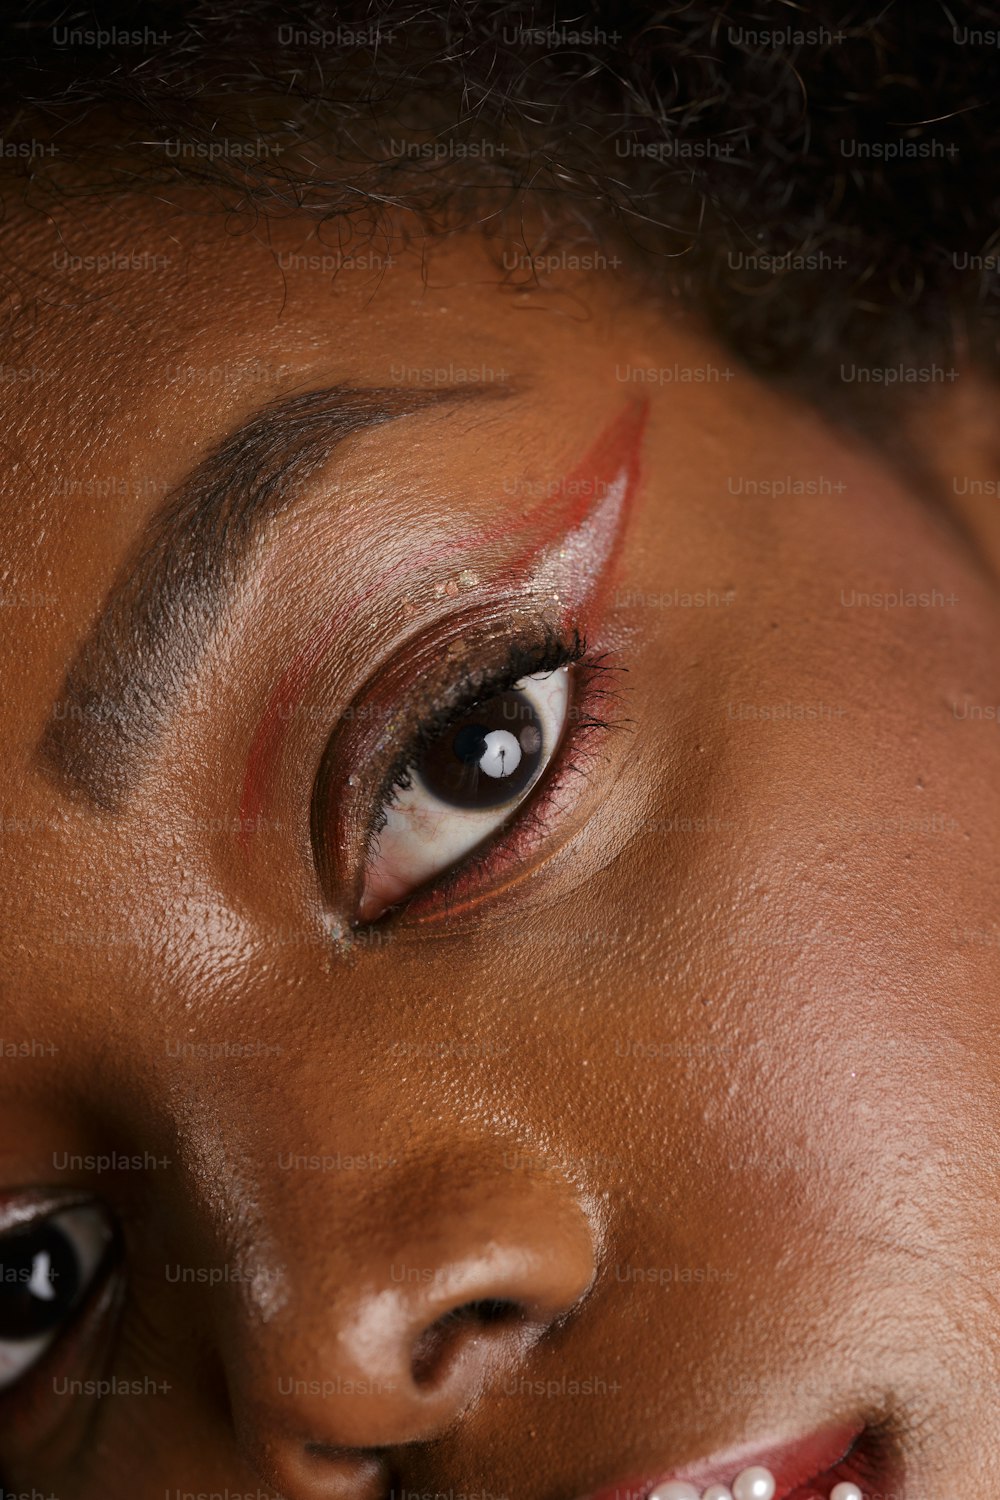 Eine Nahaufnahme des Gesichts einer Frau mit Make-up